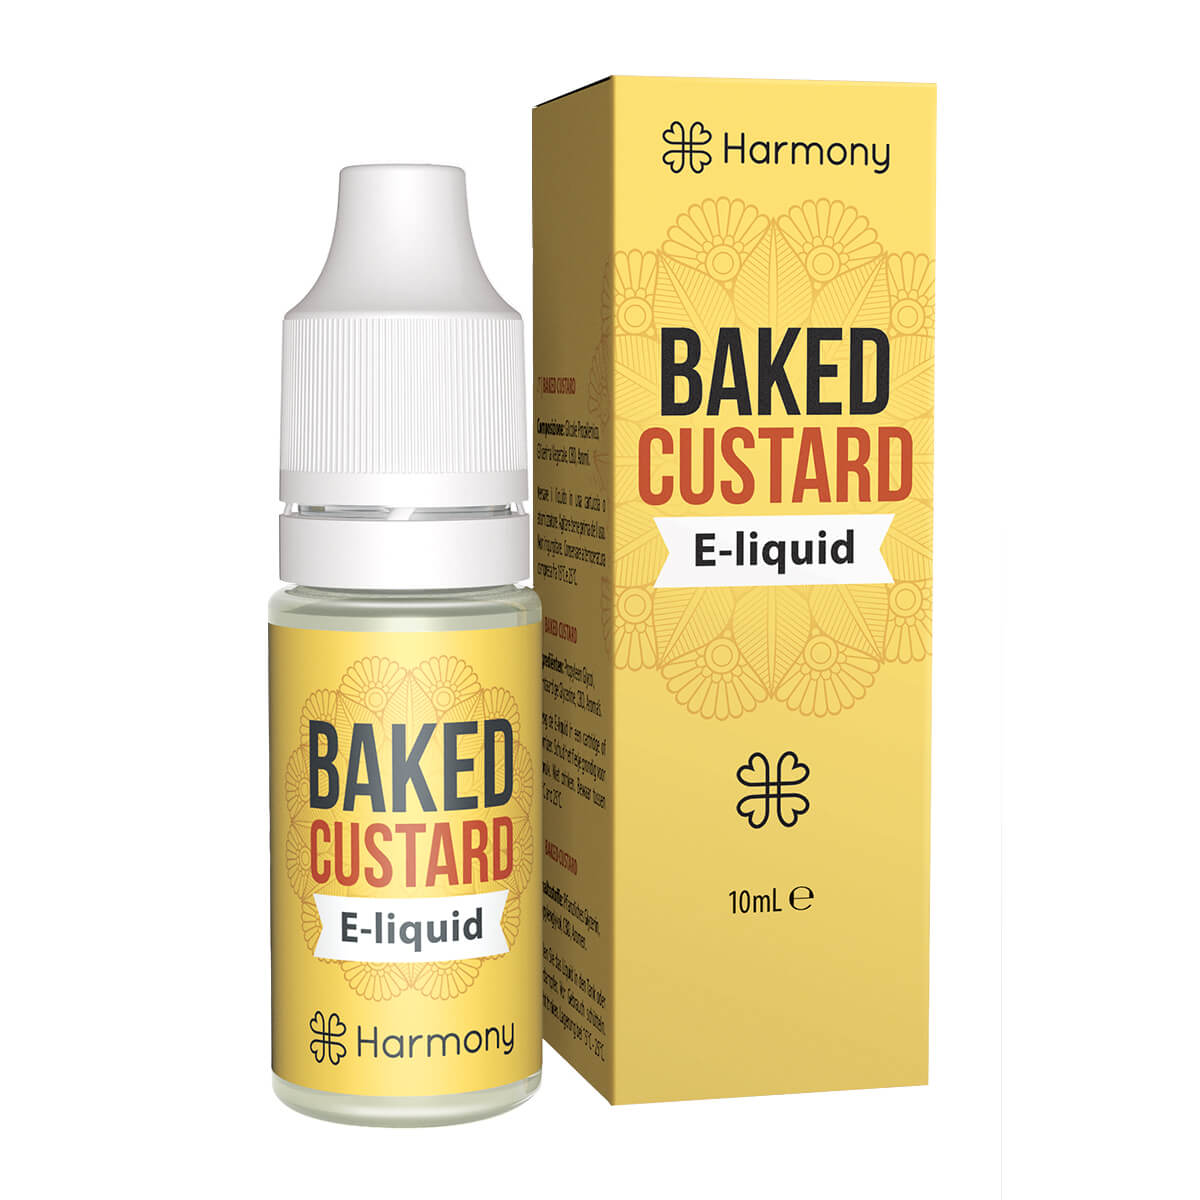 Harmony E-Liquid Baked Custard 30mg CBD (10ml)